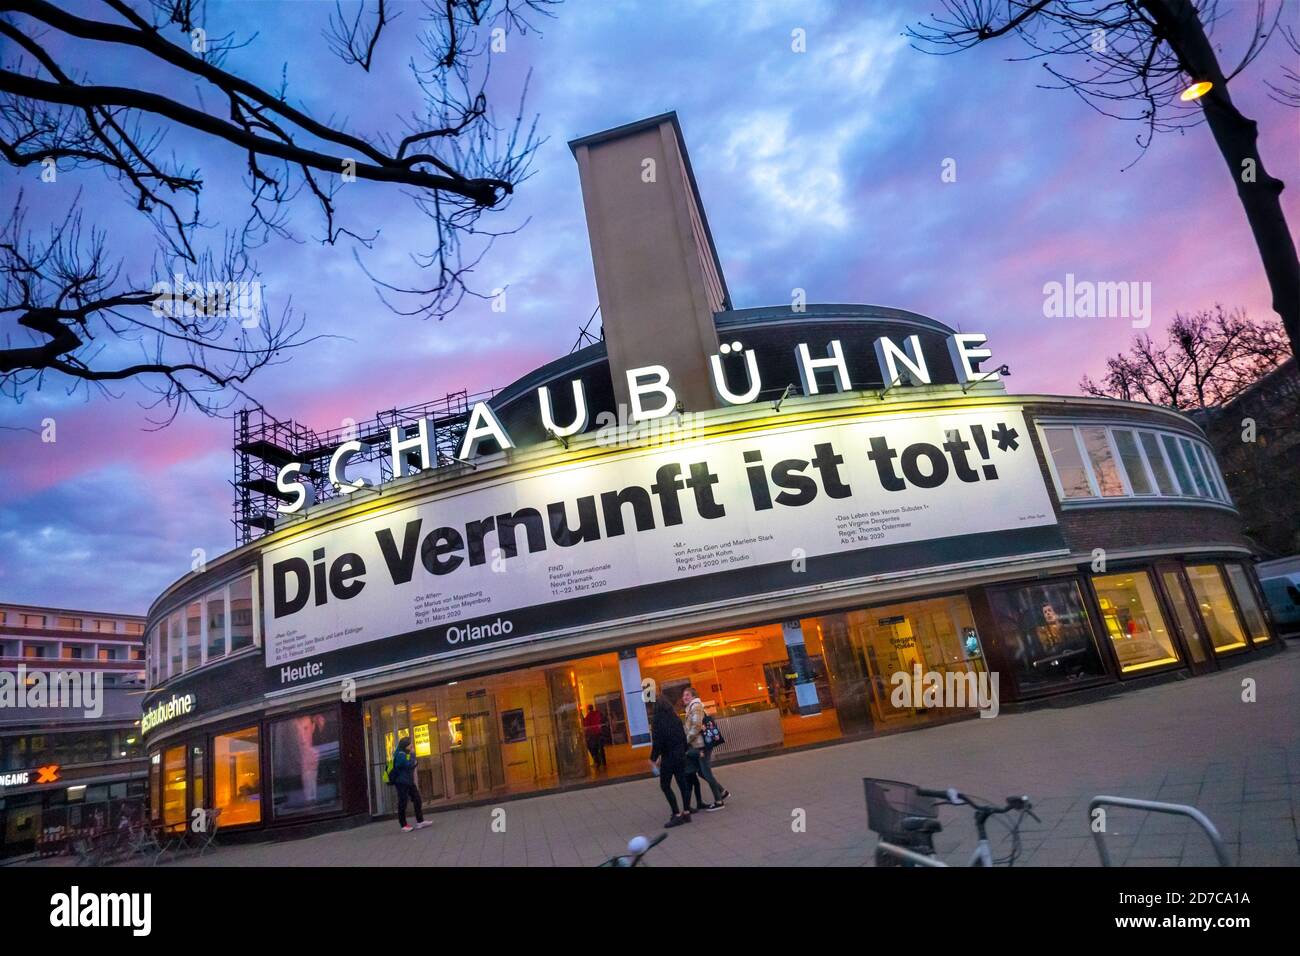 Schaubühne am Lehniner Platz. Teatro Schaubuhne famoso en Berlín con la bandera Die Vernunft ist tot: La razón o el sentido común está muerto. Foto de stock